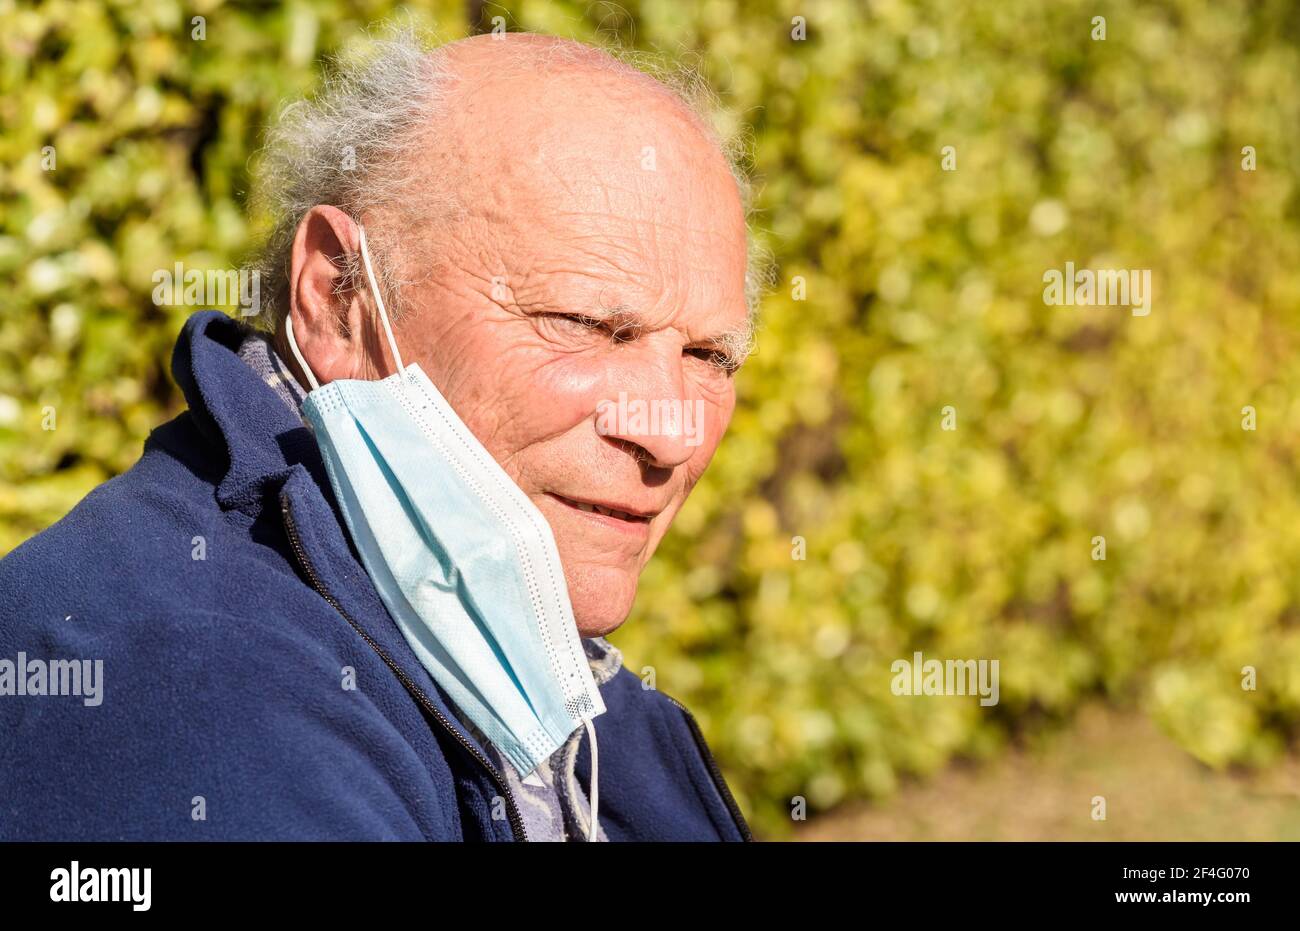 Porträt eines älteren Mannes mit medizinischer Schutzmaske vor einer Coronavirus-Pandemie. Konzept der Gefahr des Coronavirus für ältere Menschen. Stockfoto